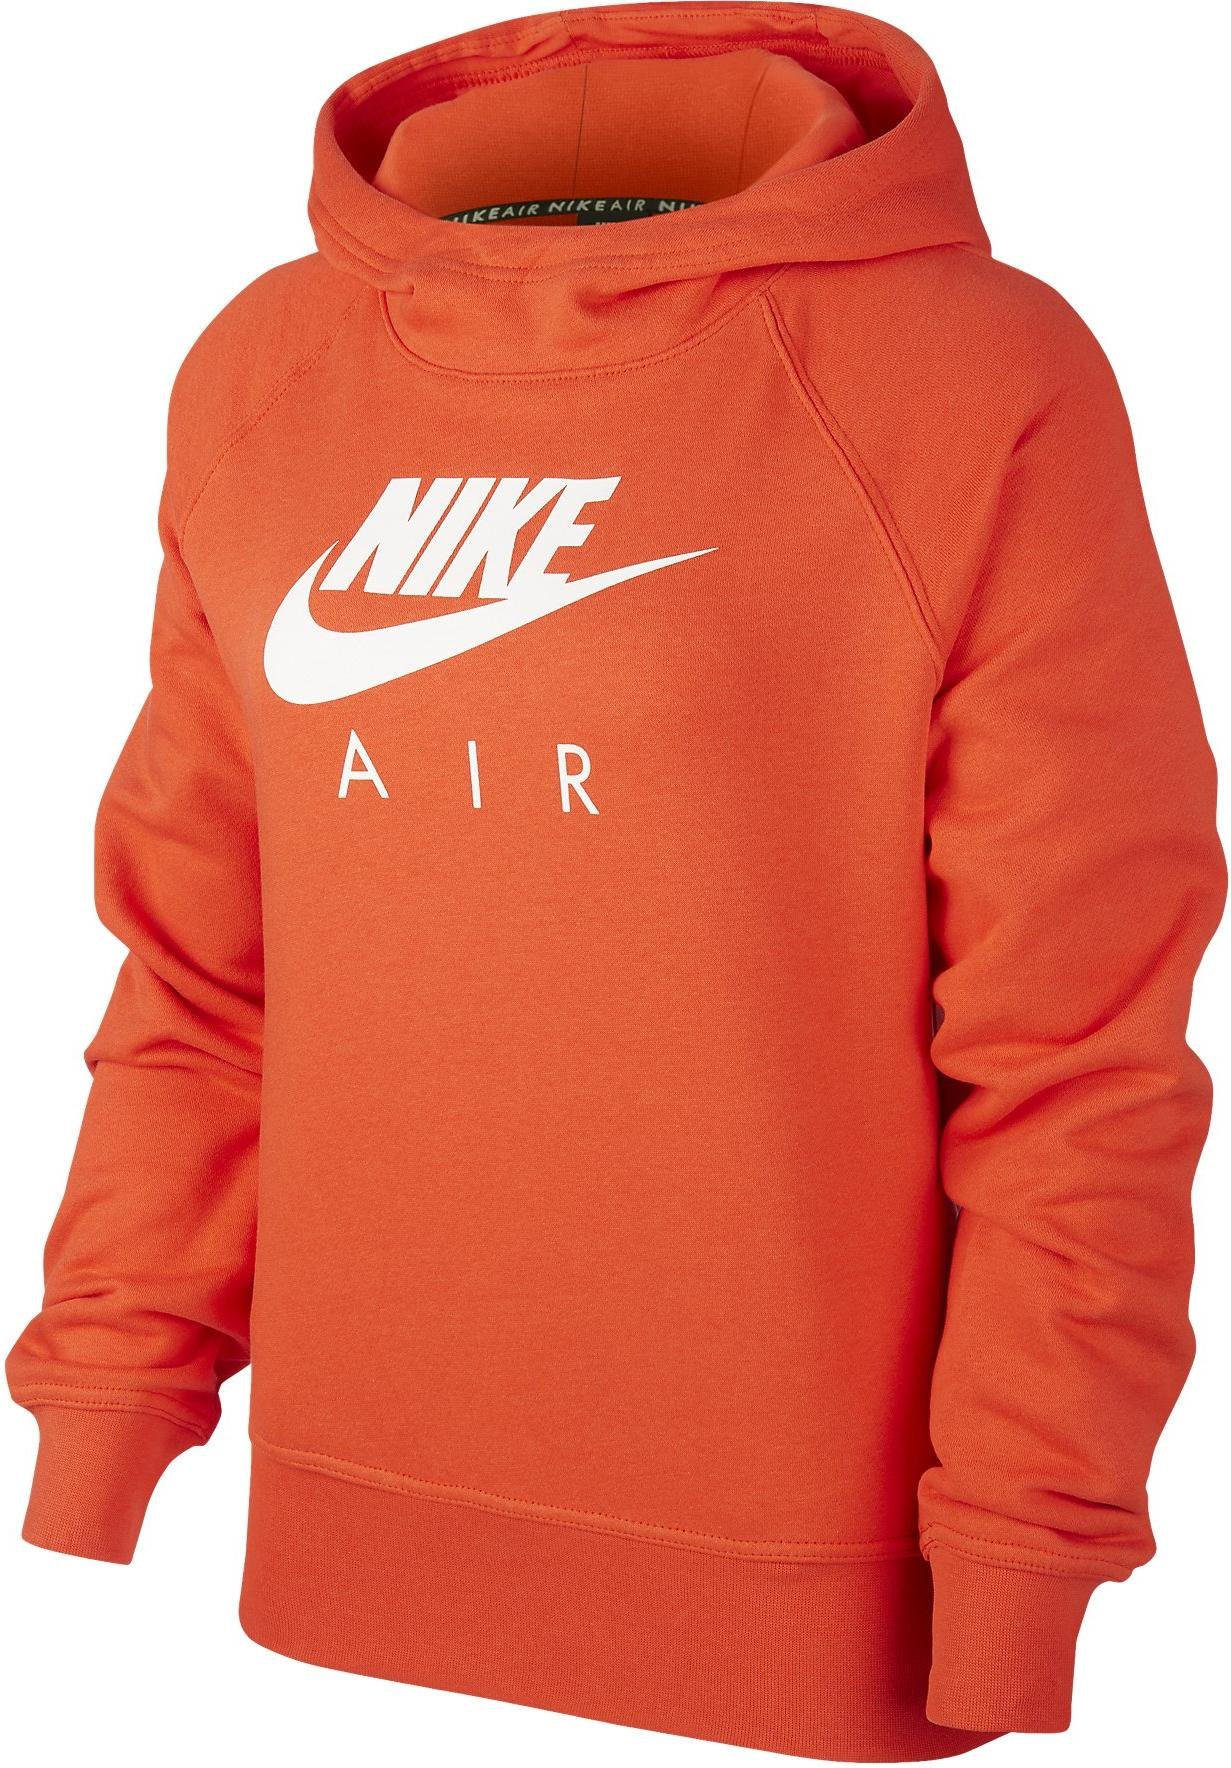 Hooded sweatshirt Nike W NSW AIR HOODIE 